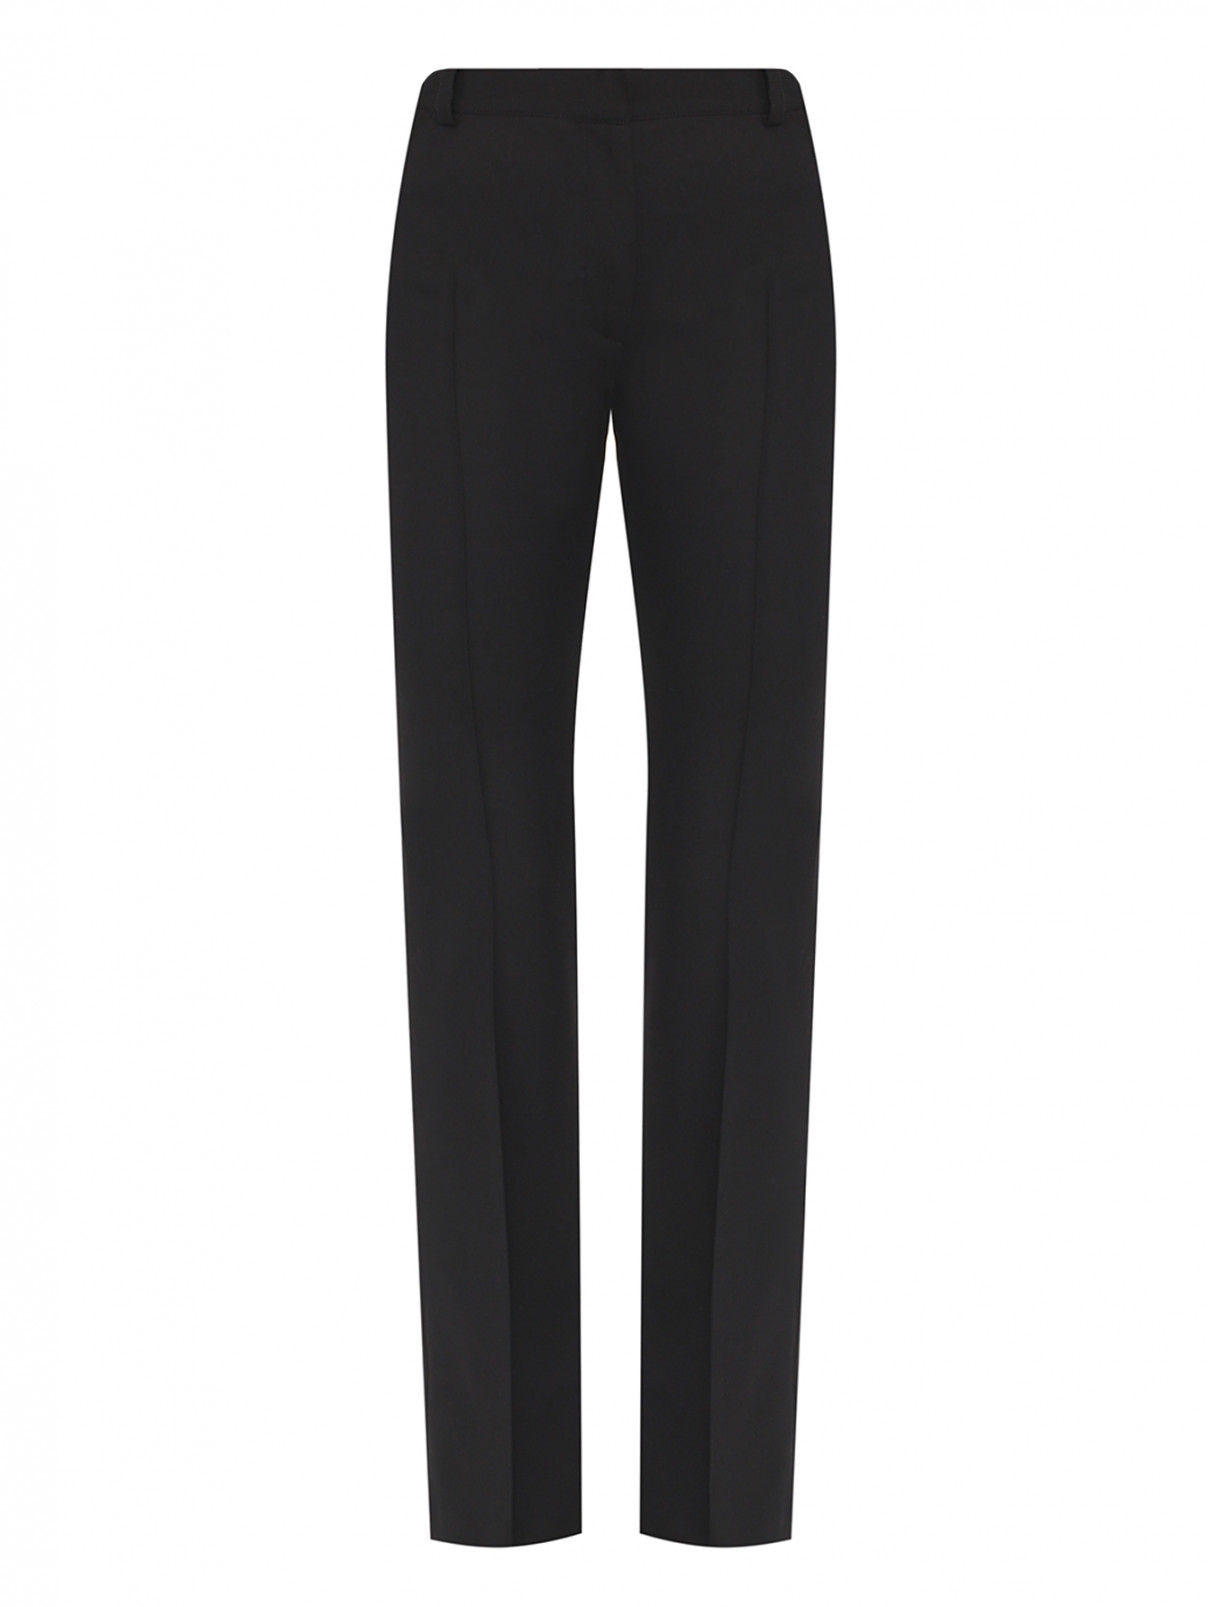 Трикотажные брюки со стрелками Luisa Spagnoli  –  Общий вид  – Цвет:  Черный